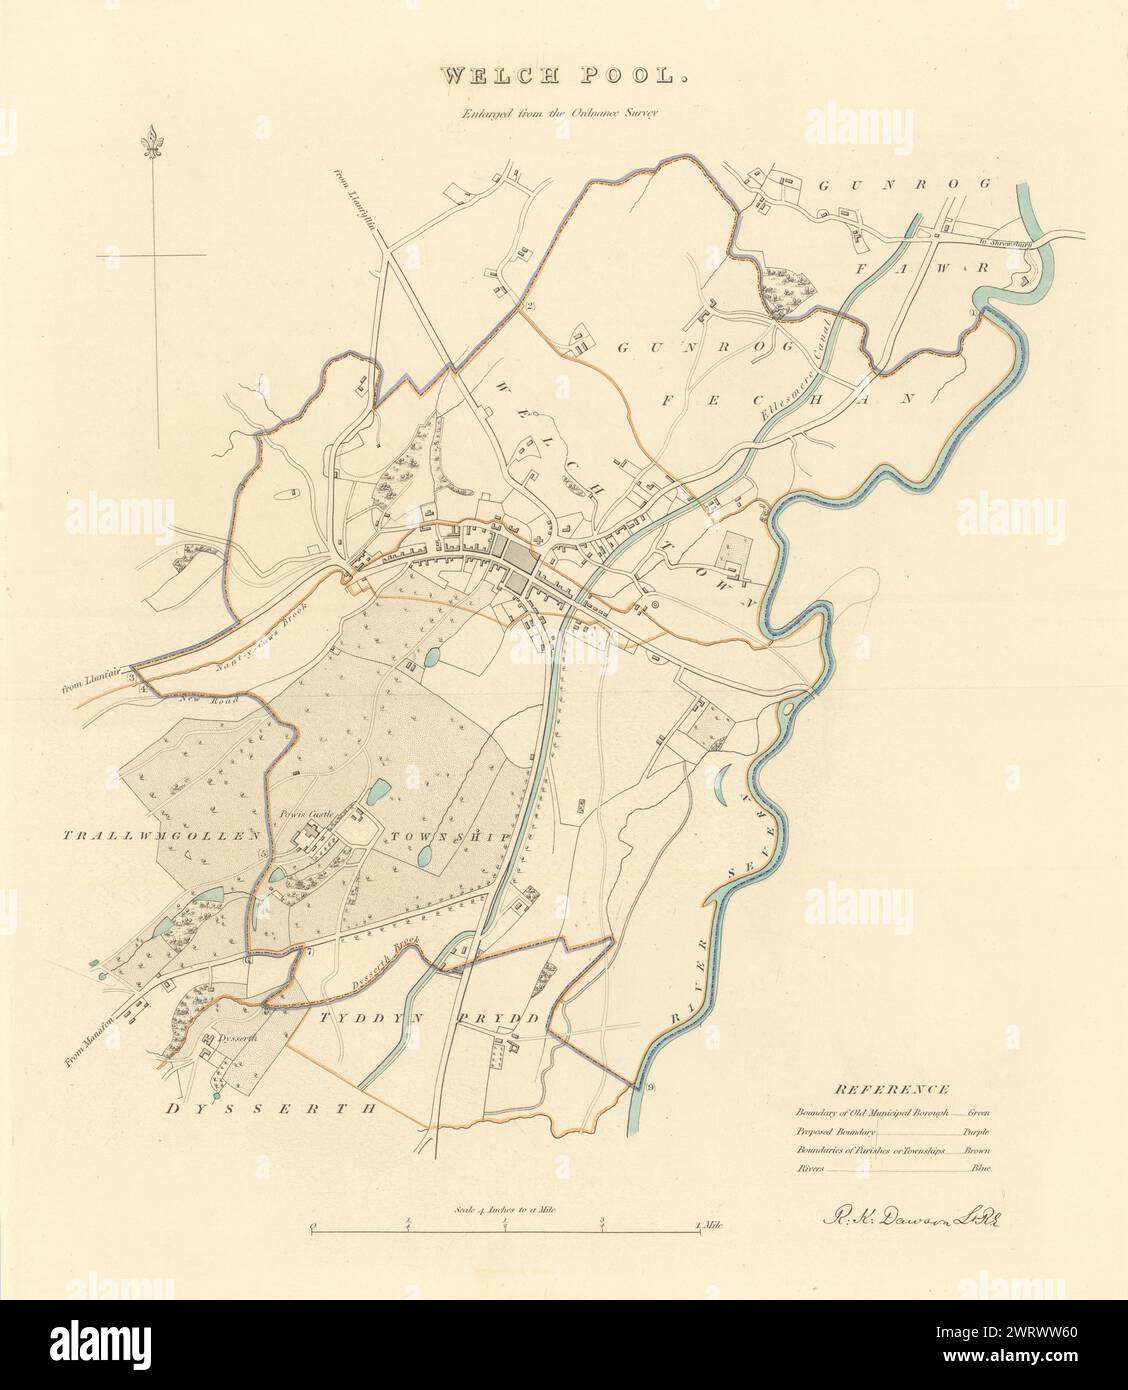 WELSHPOOL Gemeinde/Stadt planen. 'Welchpool'. Grenzkommission. DAWSON 1837 Karte Stockfoto